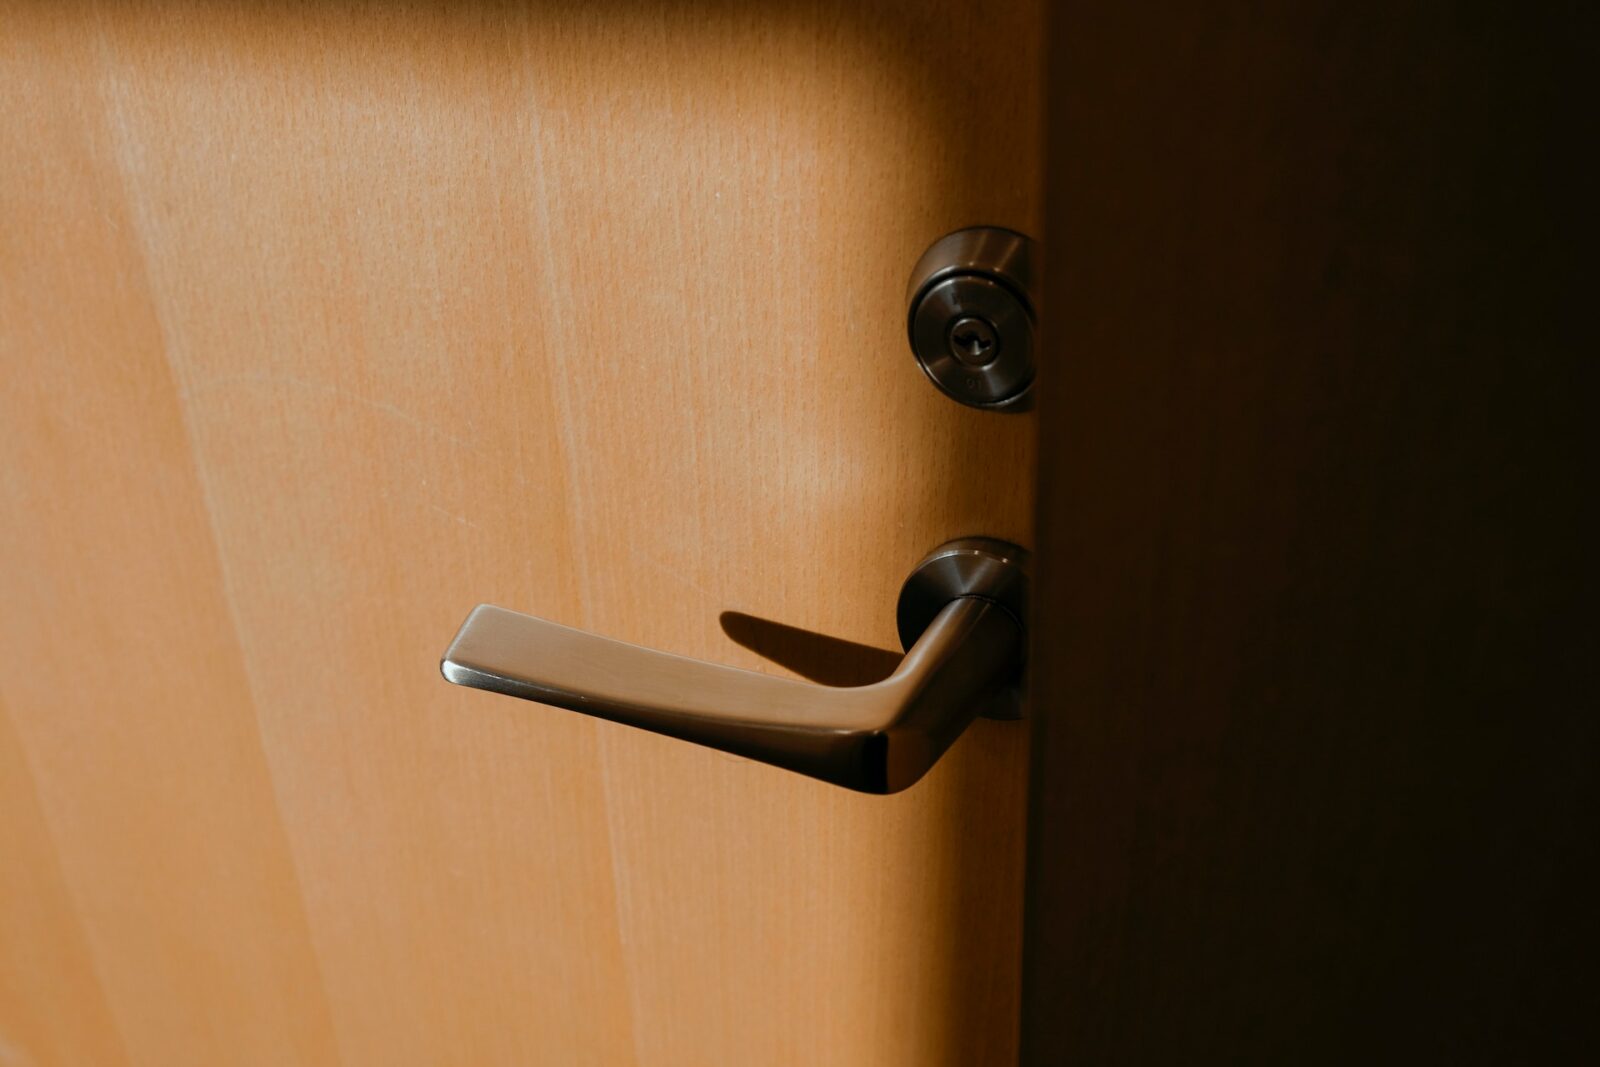 childproof door locks